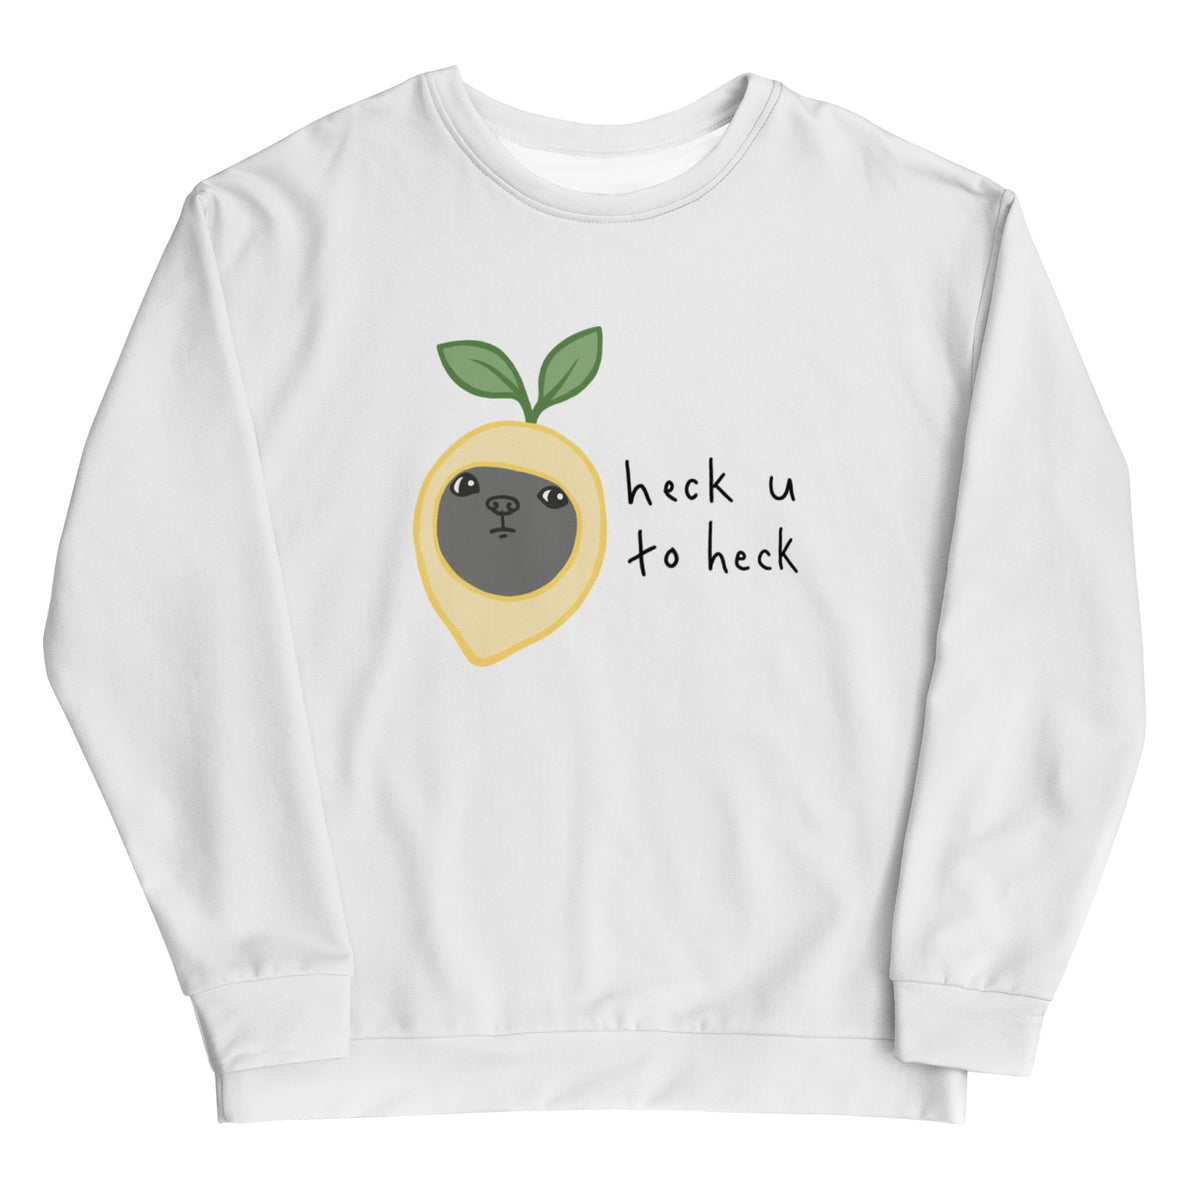 "Heck You To Heck" Adult Unisex Sweatshirt